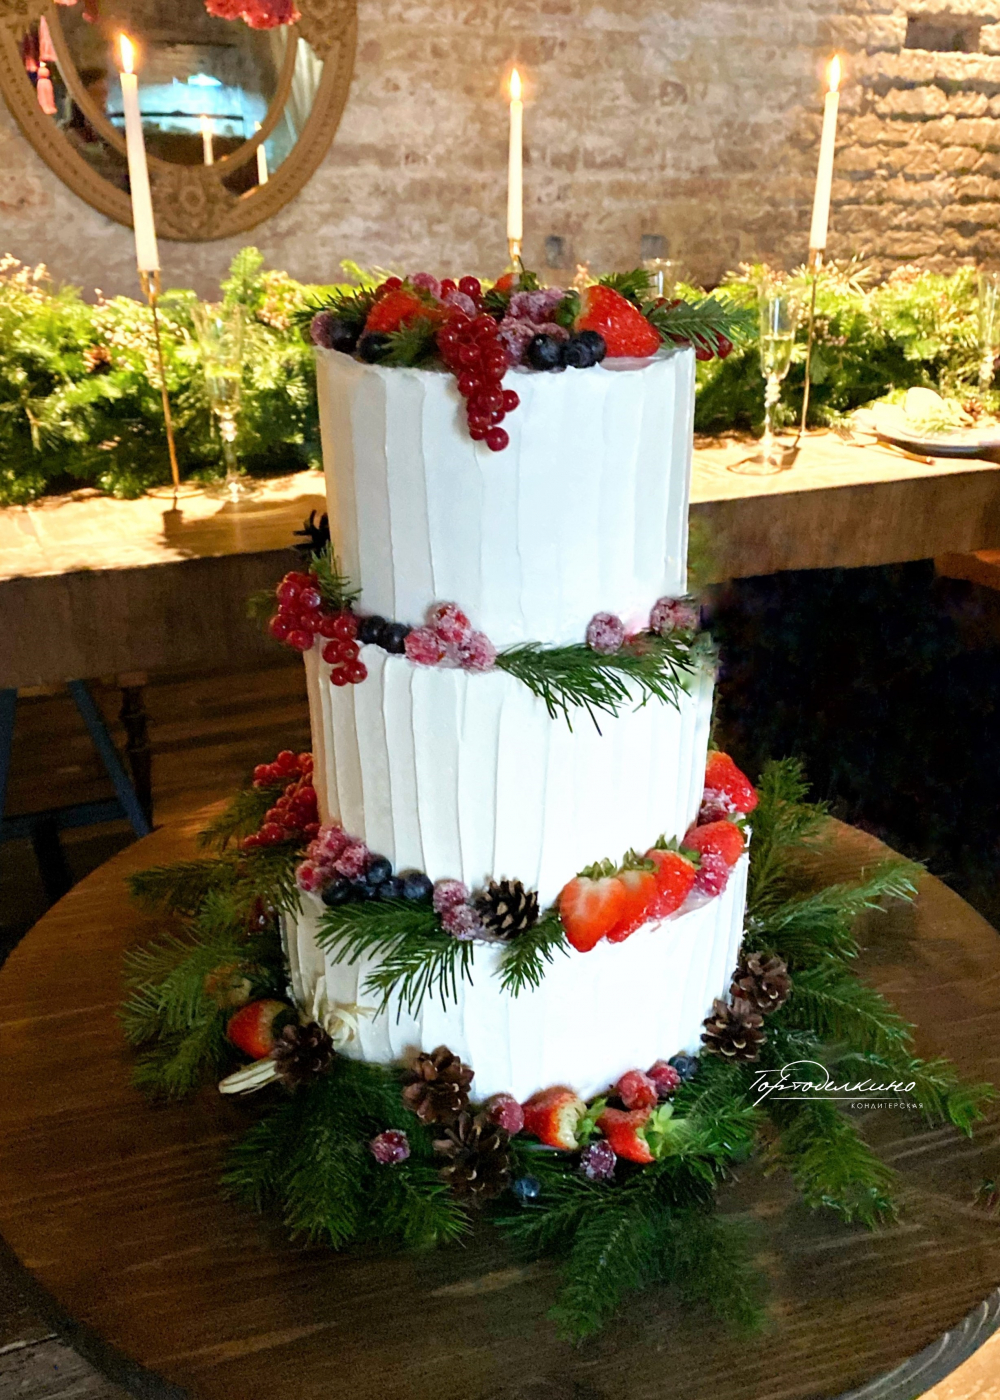 Зимний свадебный торт с ягодами - идеальный выбор для свадьбы в эко-формате в стиле бохо, Прованс или рустик. 